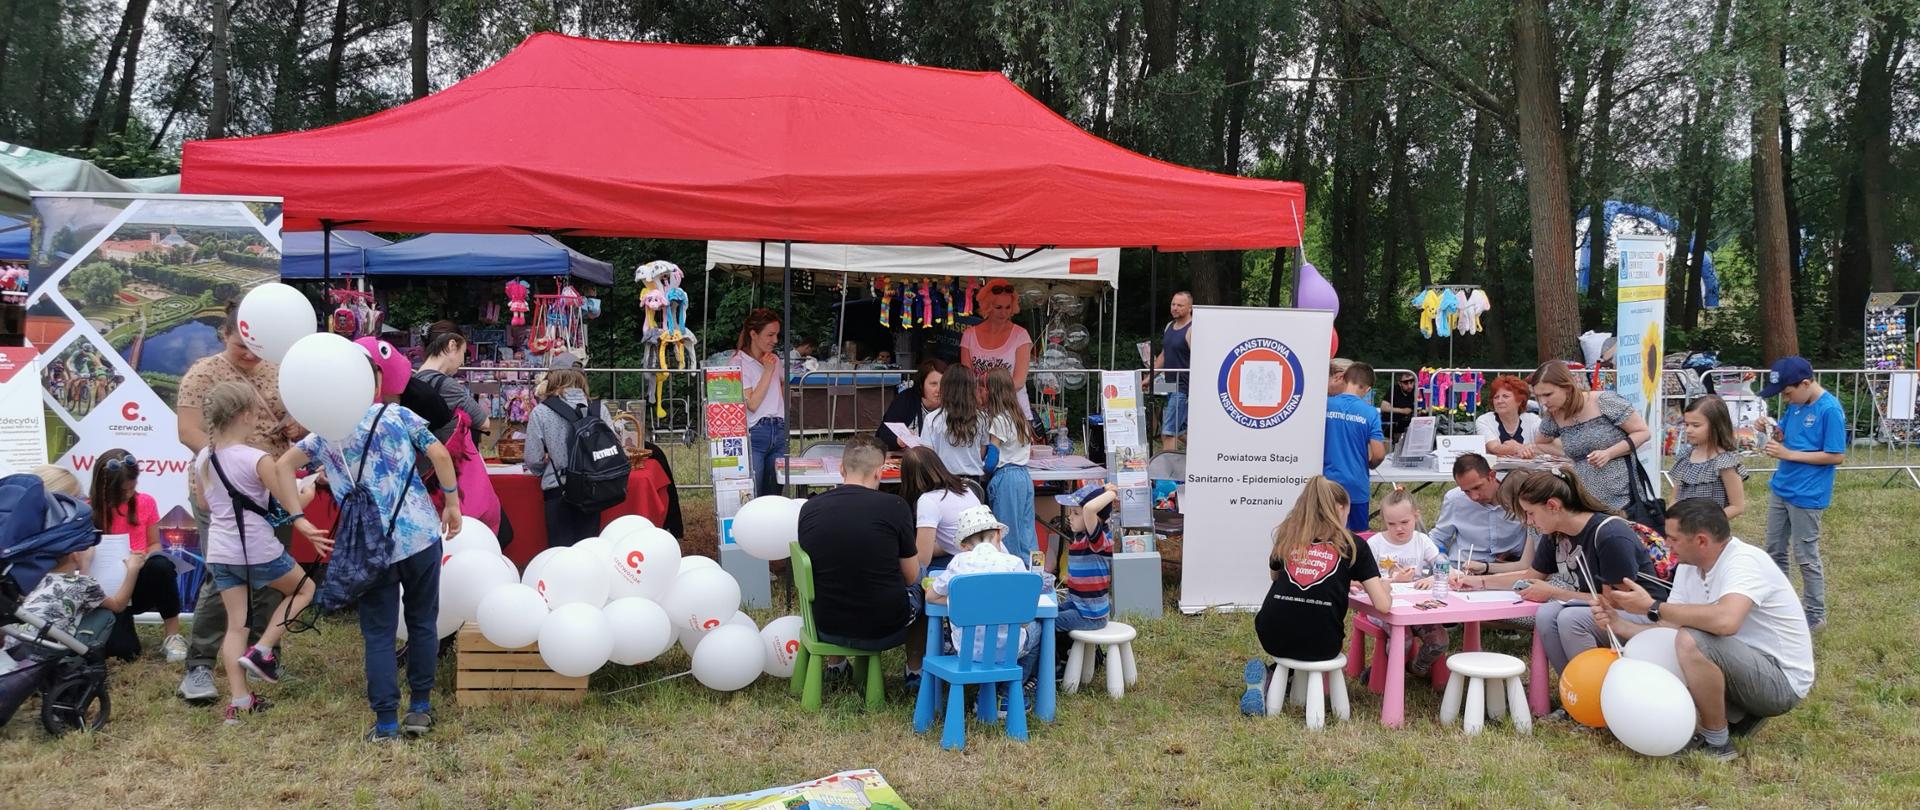 Stanowisko PSSE w Poznaniu oraz gminy Czerwonak. Przed namiotem przy stolikach dzieci i dorośli rozwiązują zadania konkursowe.